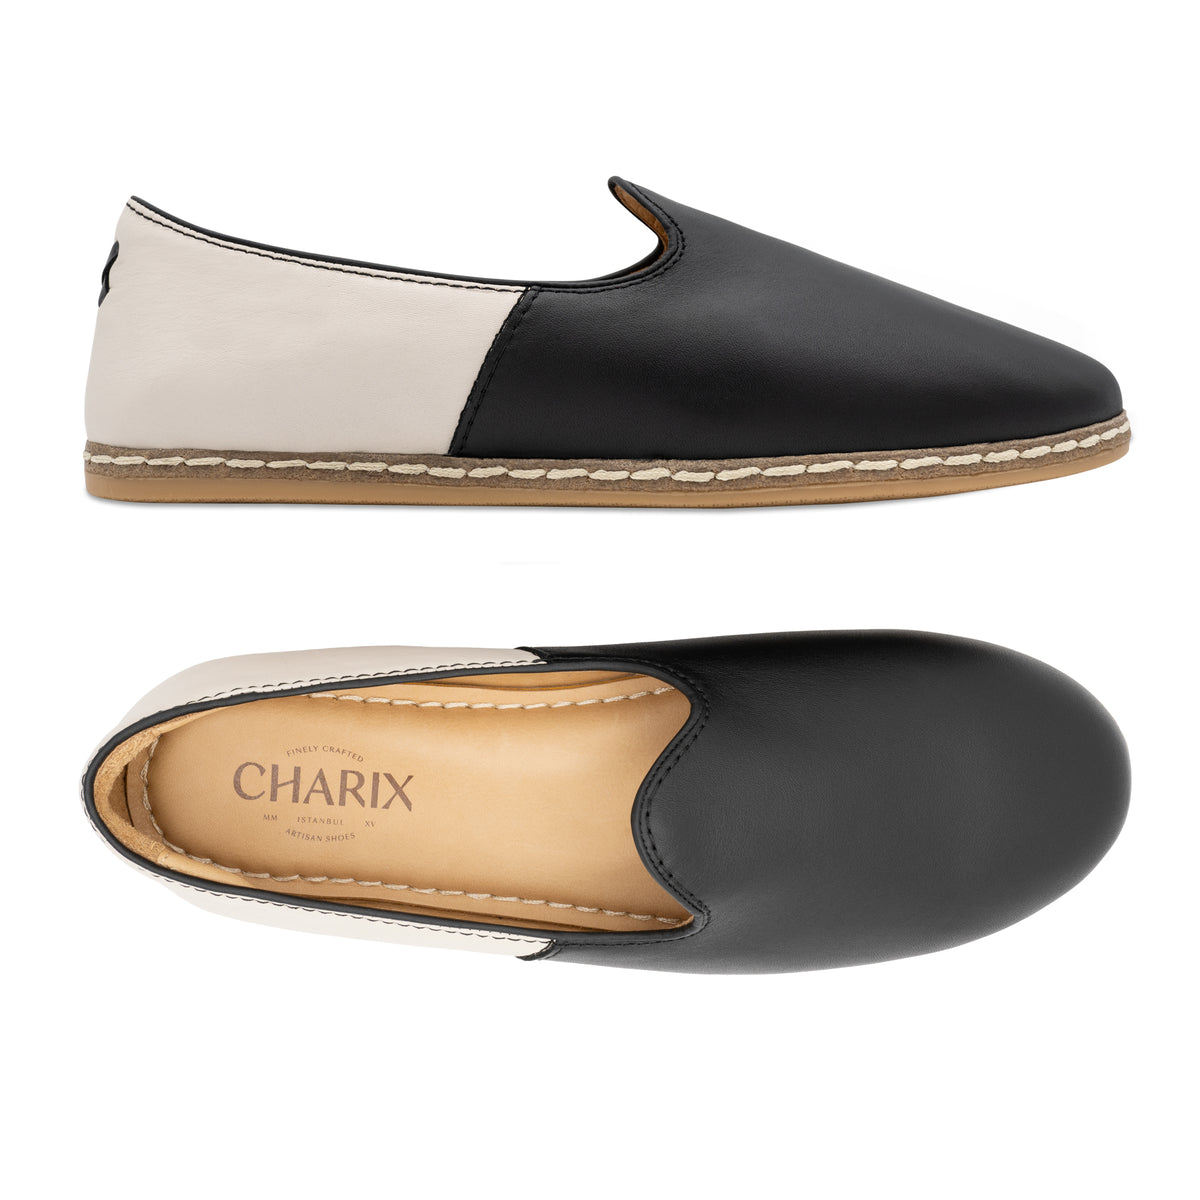 Black & White Slip Ons for Men - Charix Shoes